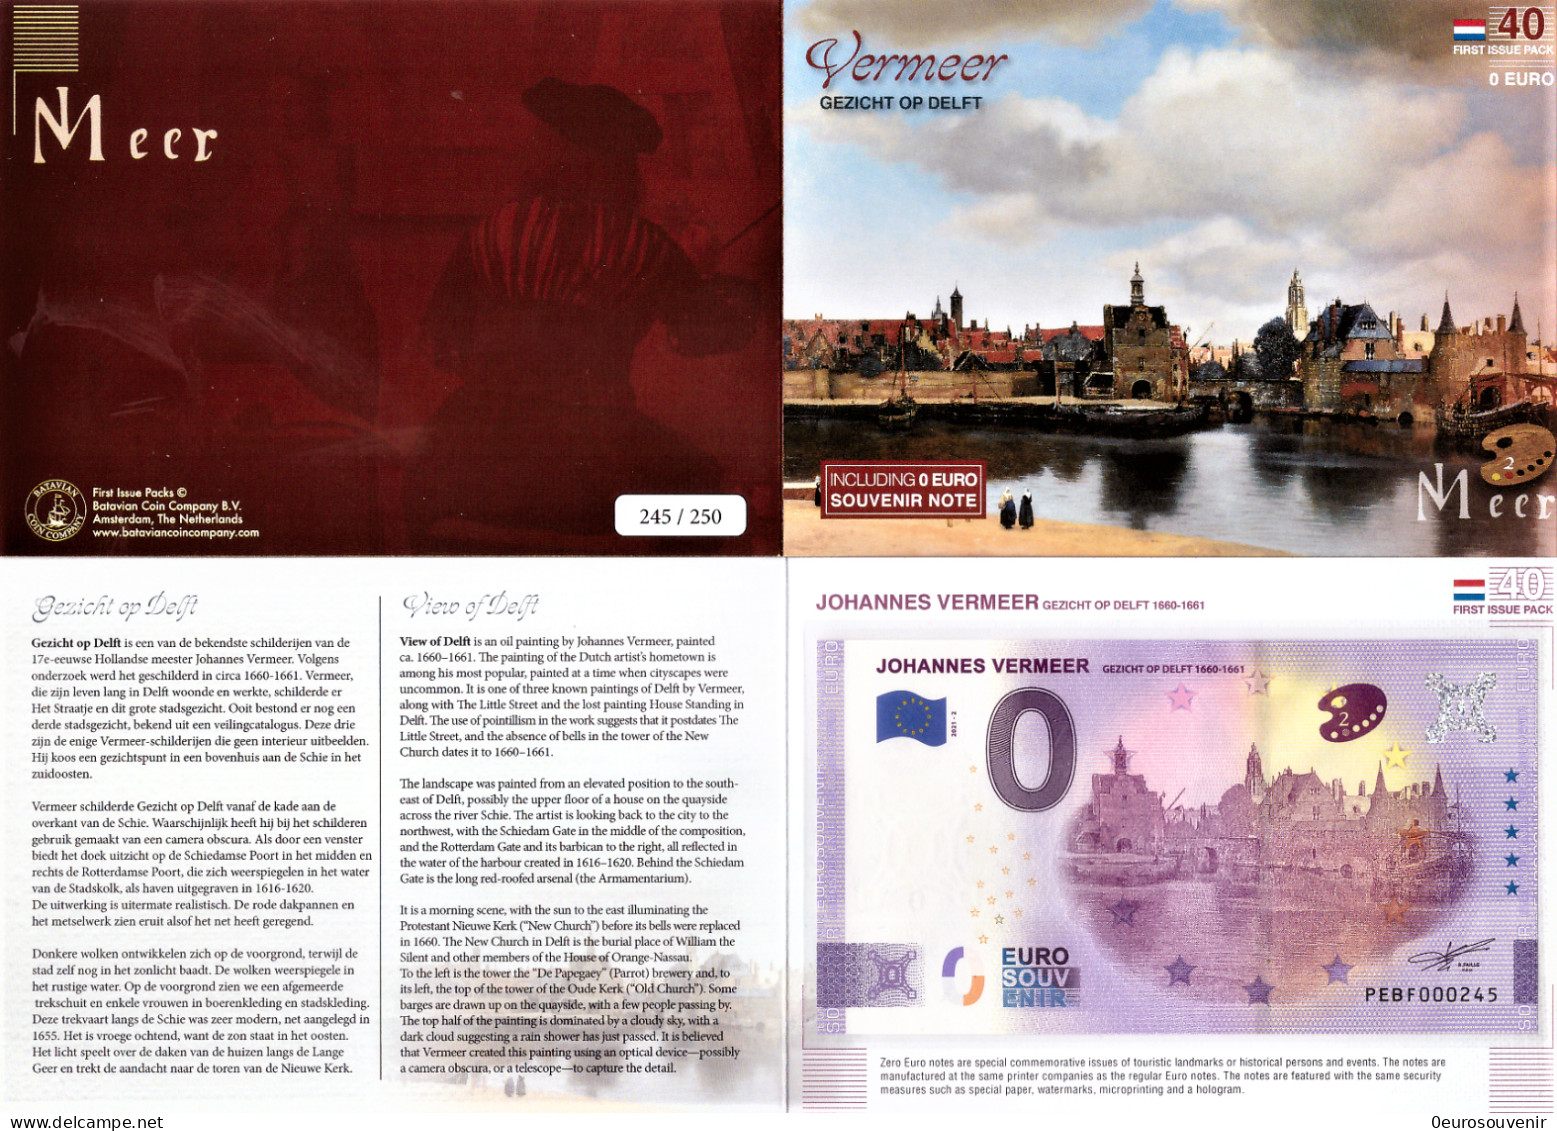 0-Euro PEBF 2021-2 JOHANNES VERMEER - GEZICHT OP DELFT 1660-1661 First Issue Pack No. Nur Bis #250 ! - Privatentwürfe